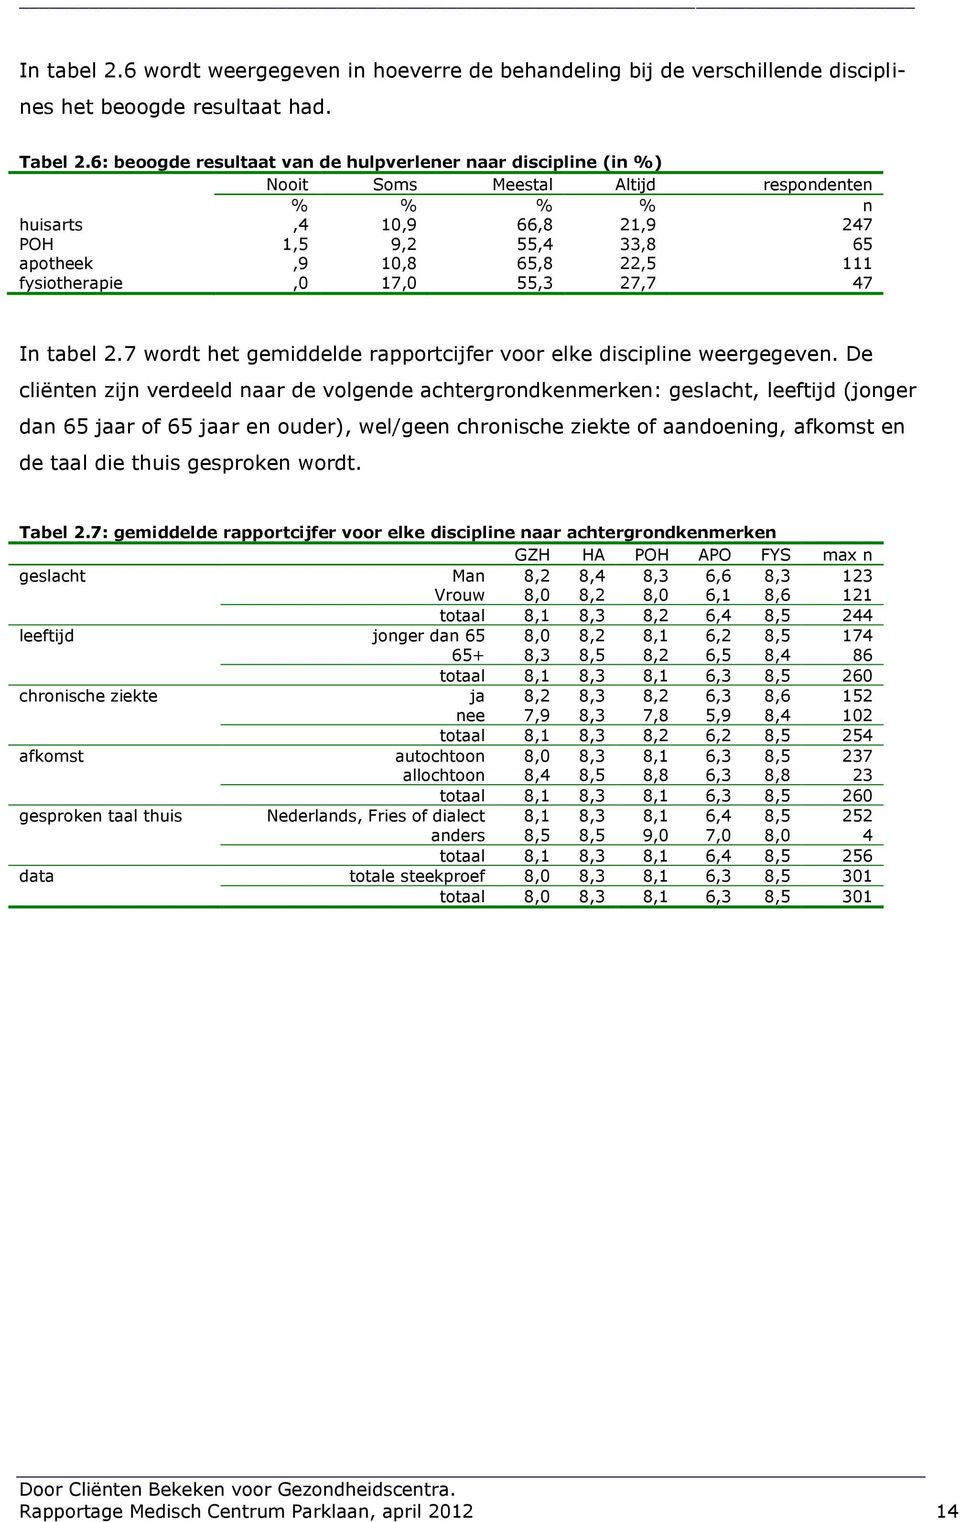 fysiotherapie,0 17,0 55,3 27,7 47 In tabel 2.7 wordt het gemiddelde rapportcijfer voor elke discipline weergegeven.